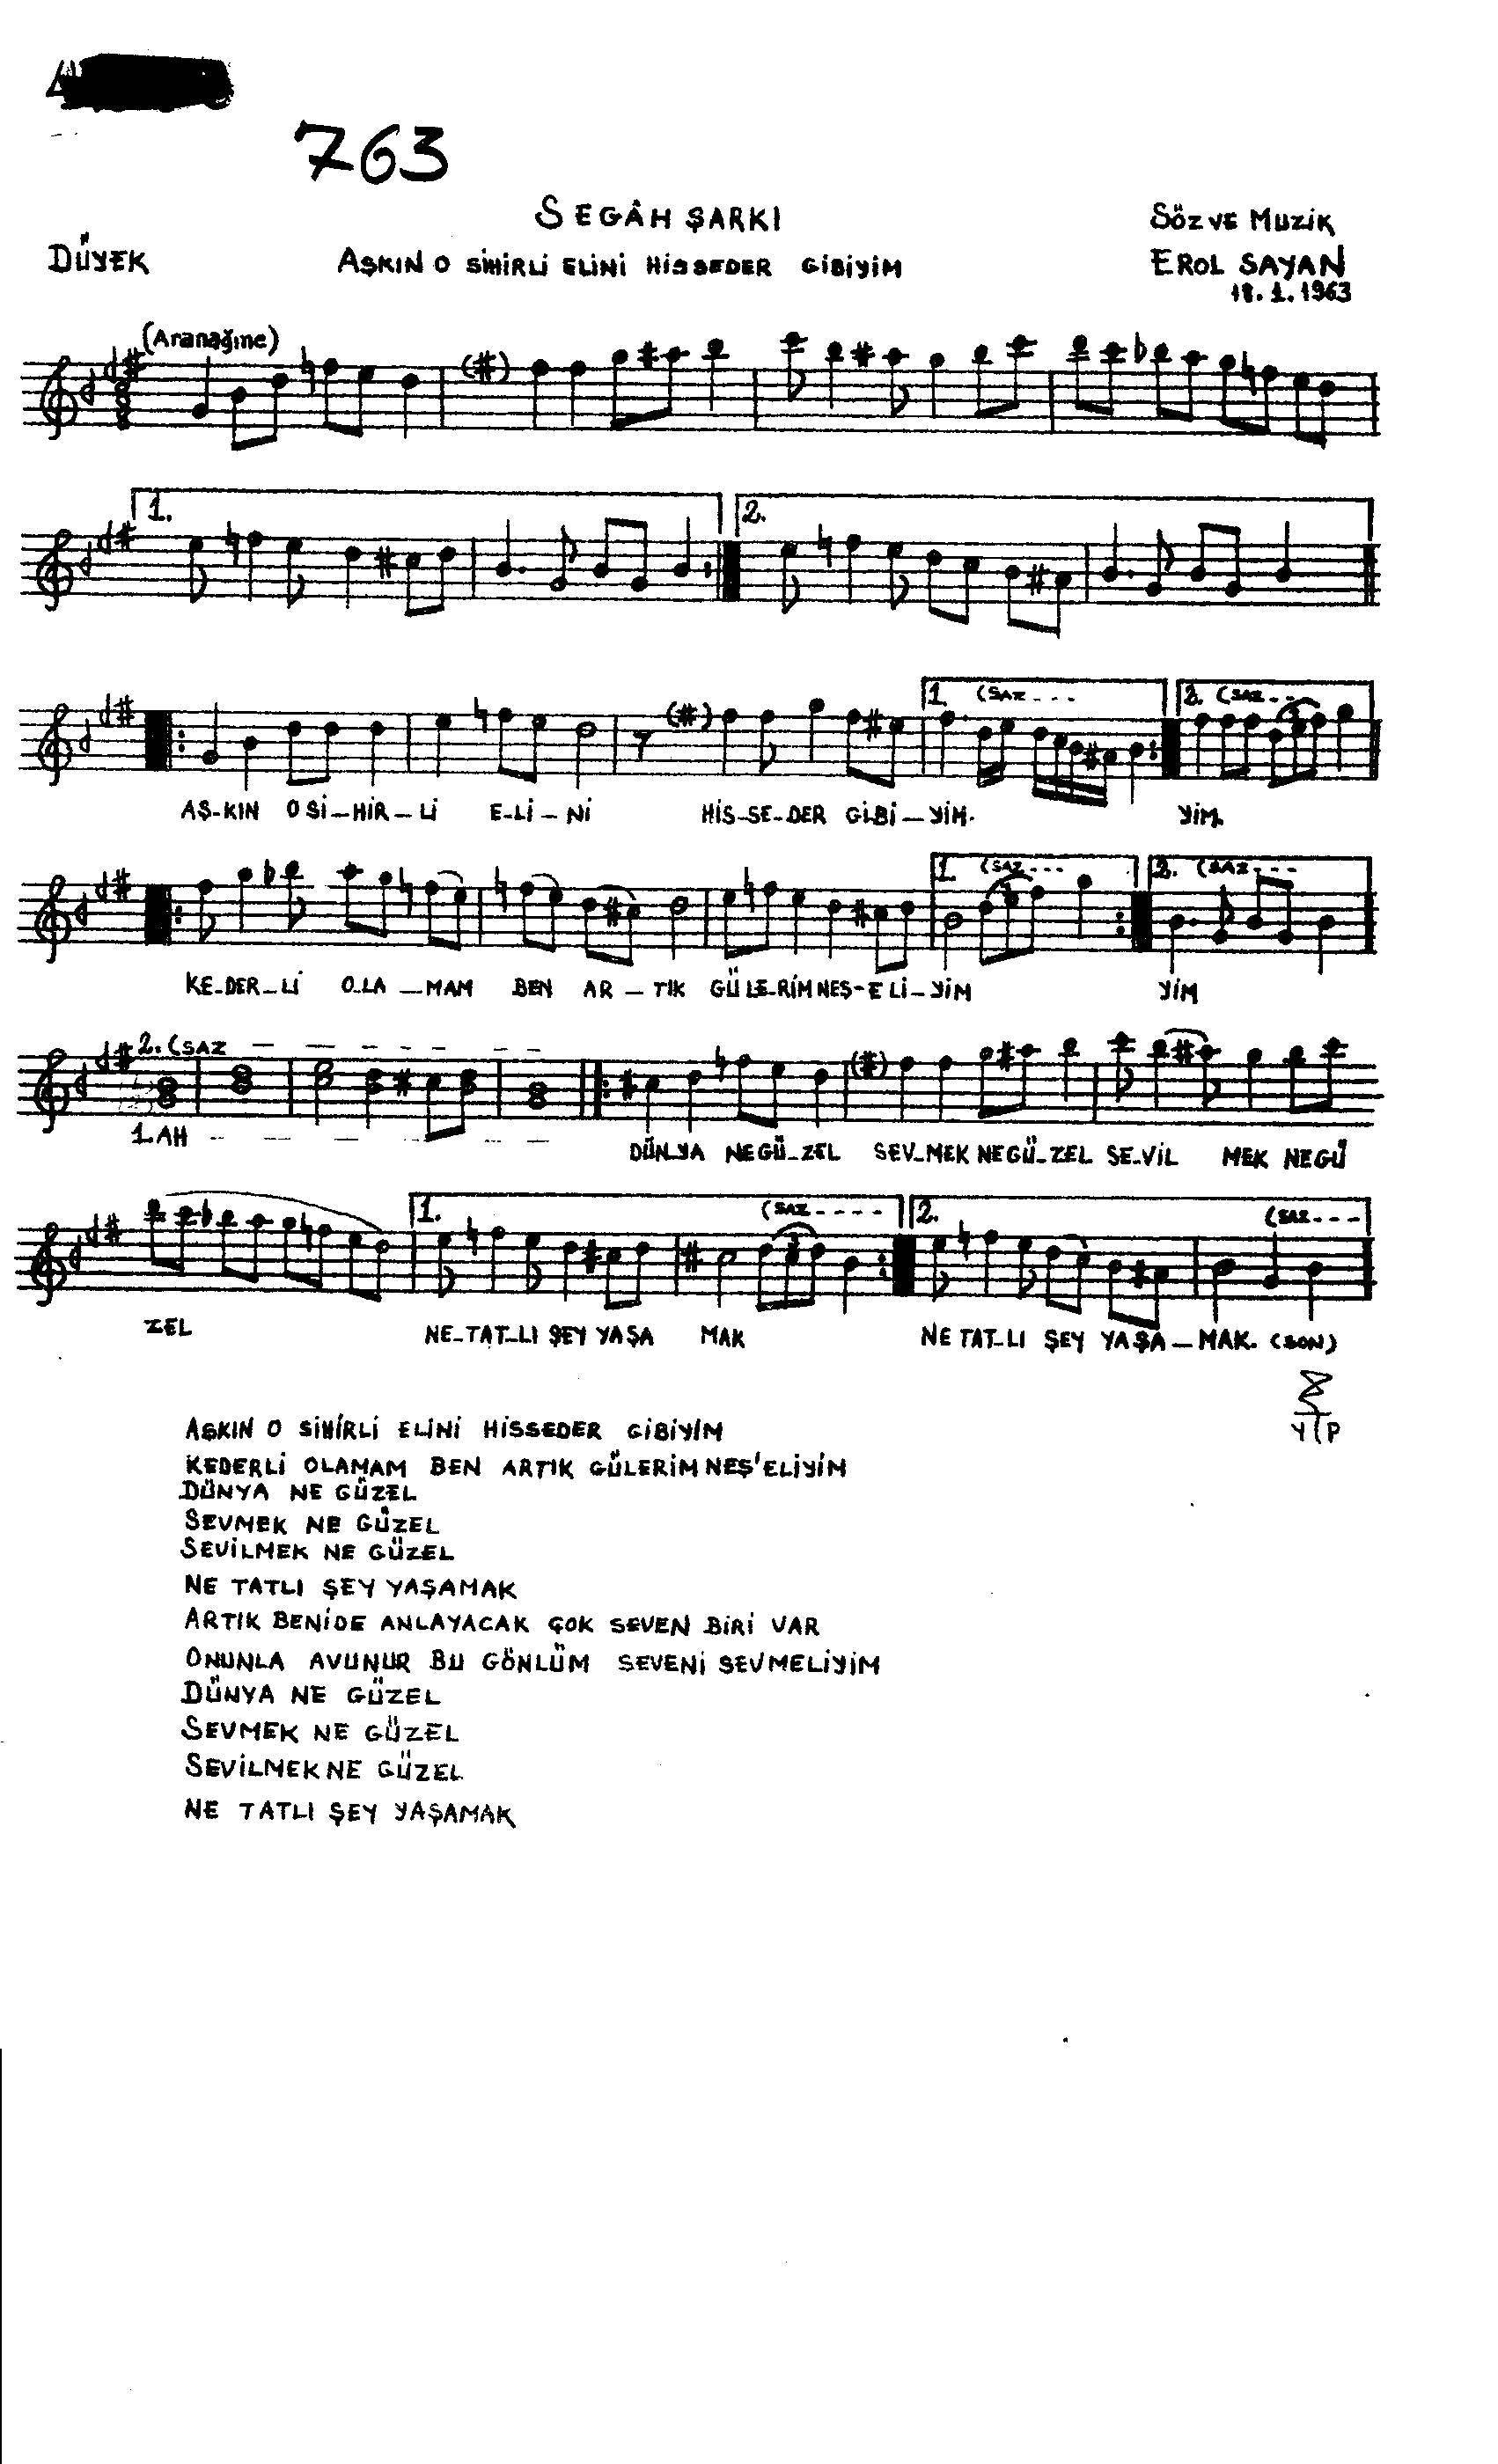 Segâh - Şarkı - Erol Sayan - Sayfa 1